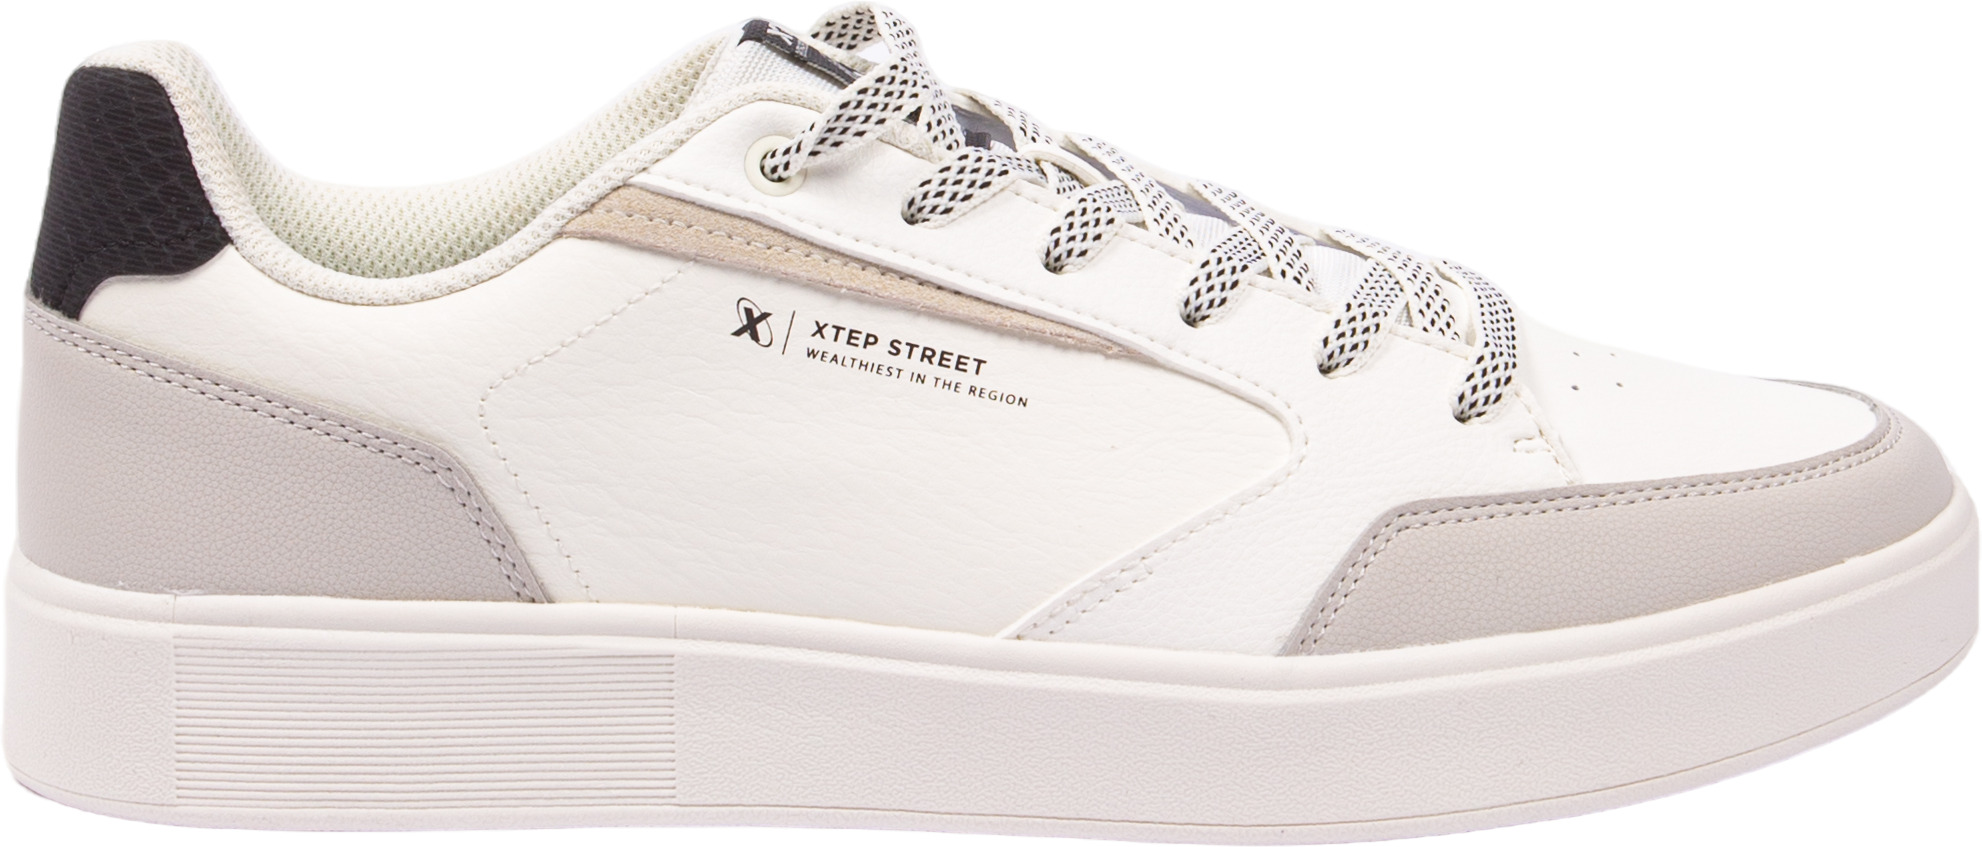 Кеды мужские XTEP Street Classic Sneakers Series Sports Life белые 42 EU